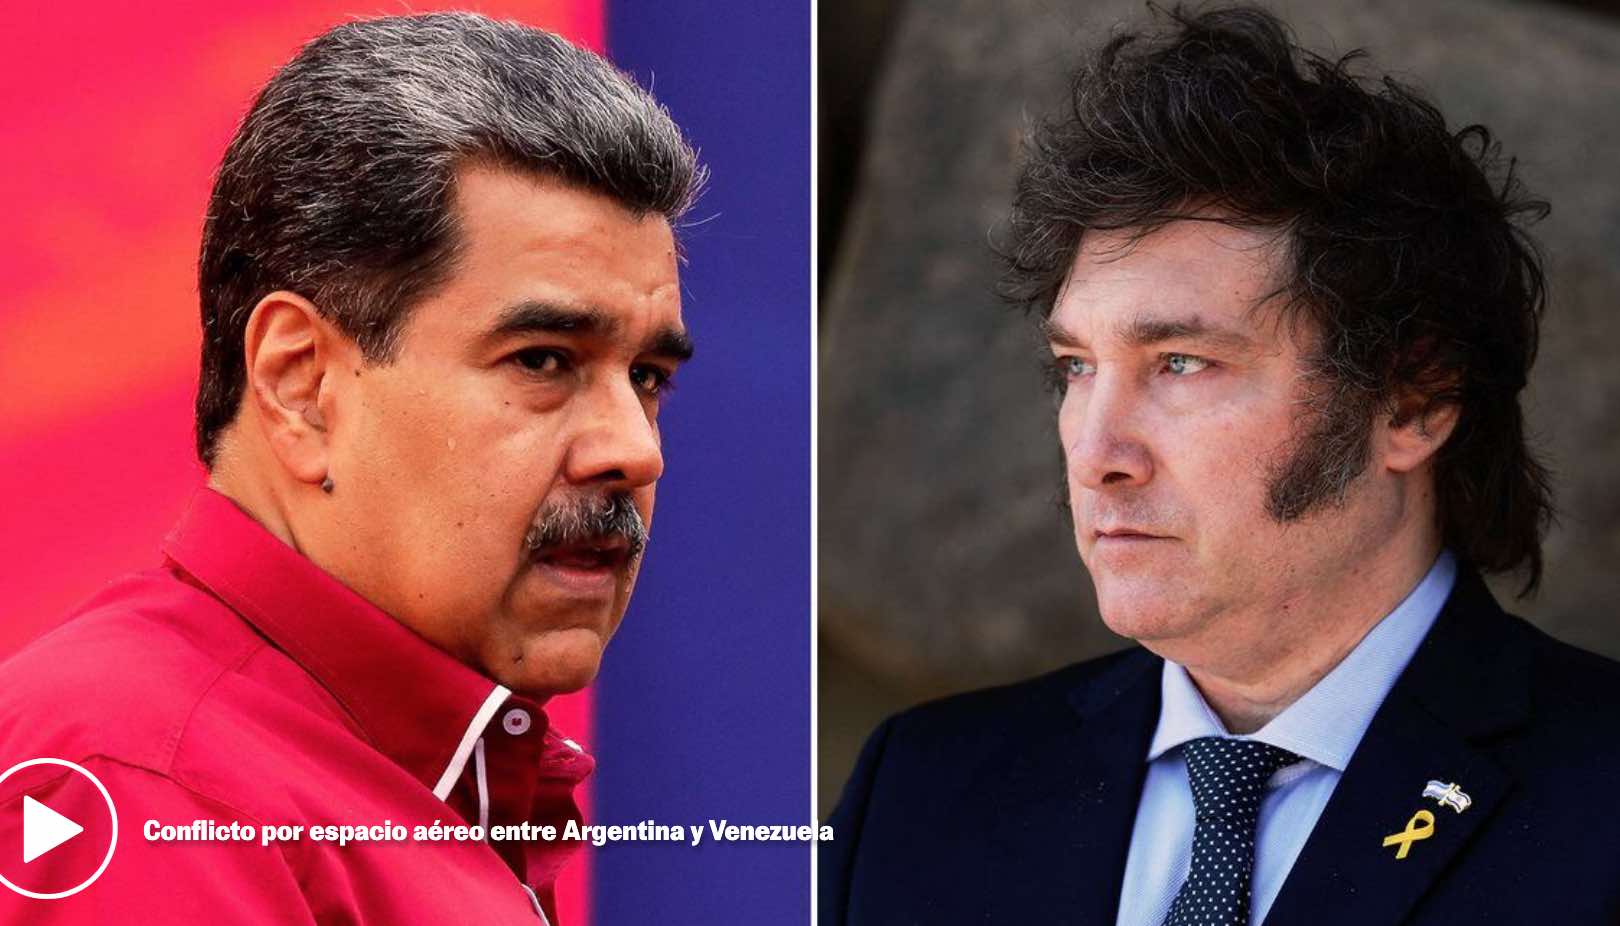 Tensi?n a?rea entre Argentina y Venezuela